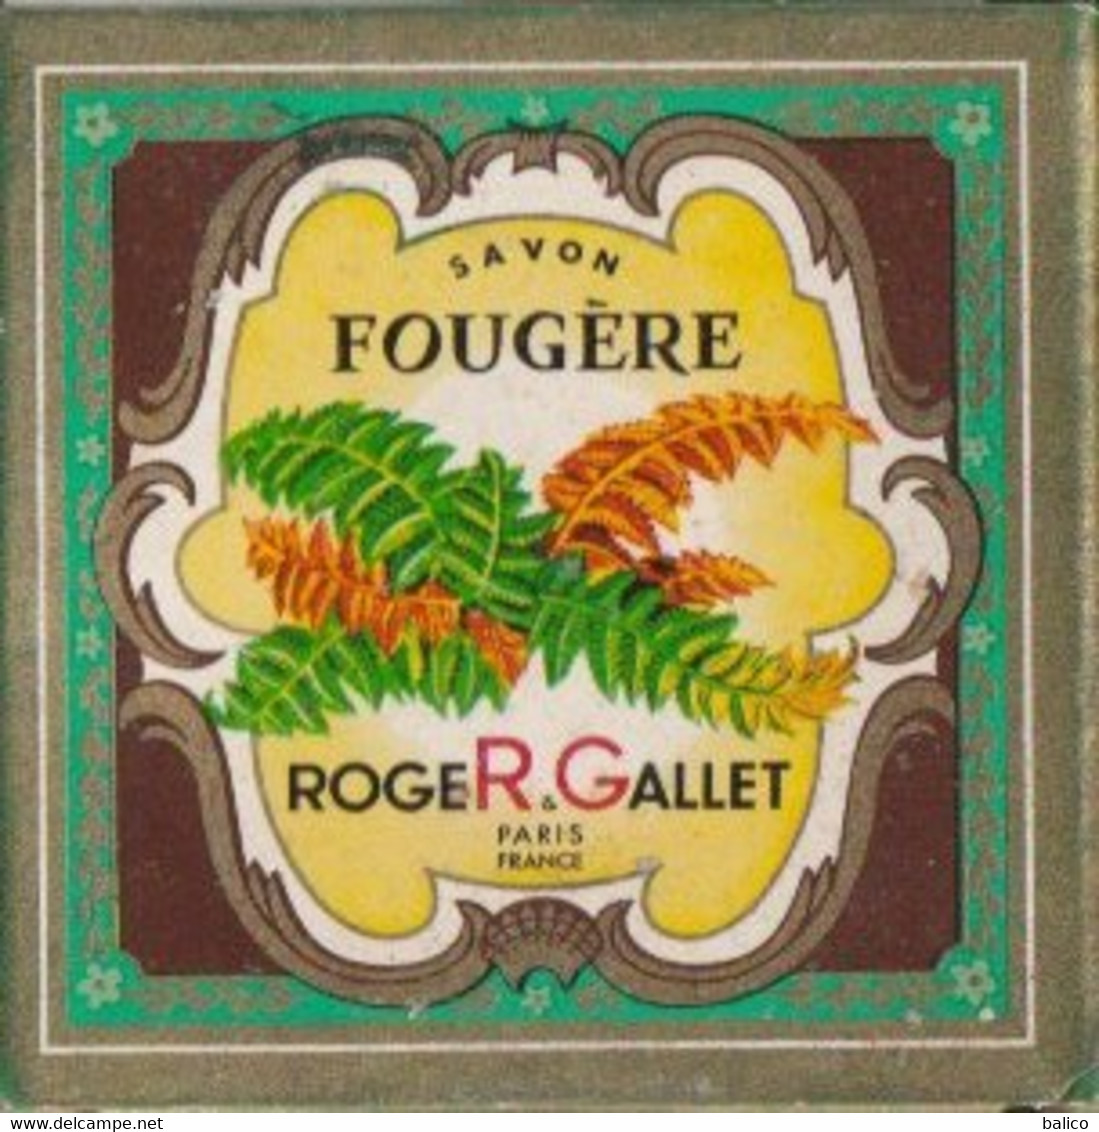 Échantillon De Savons De Roger Gallet, Paris  ( Boite Ancienne  Et Savons Neuf ) - Kosmetika